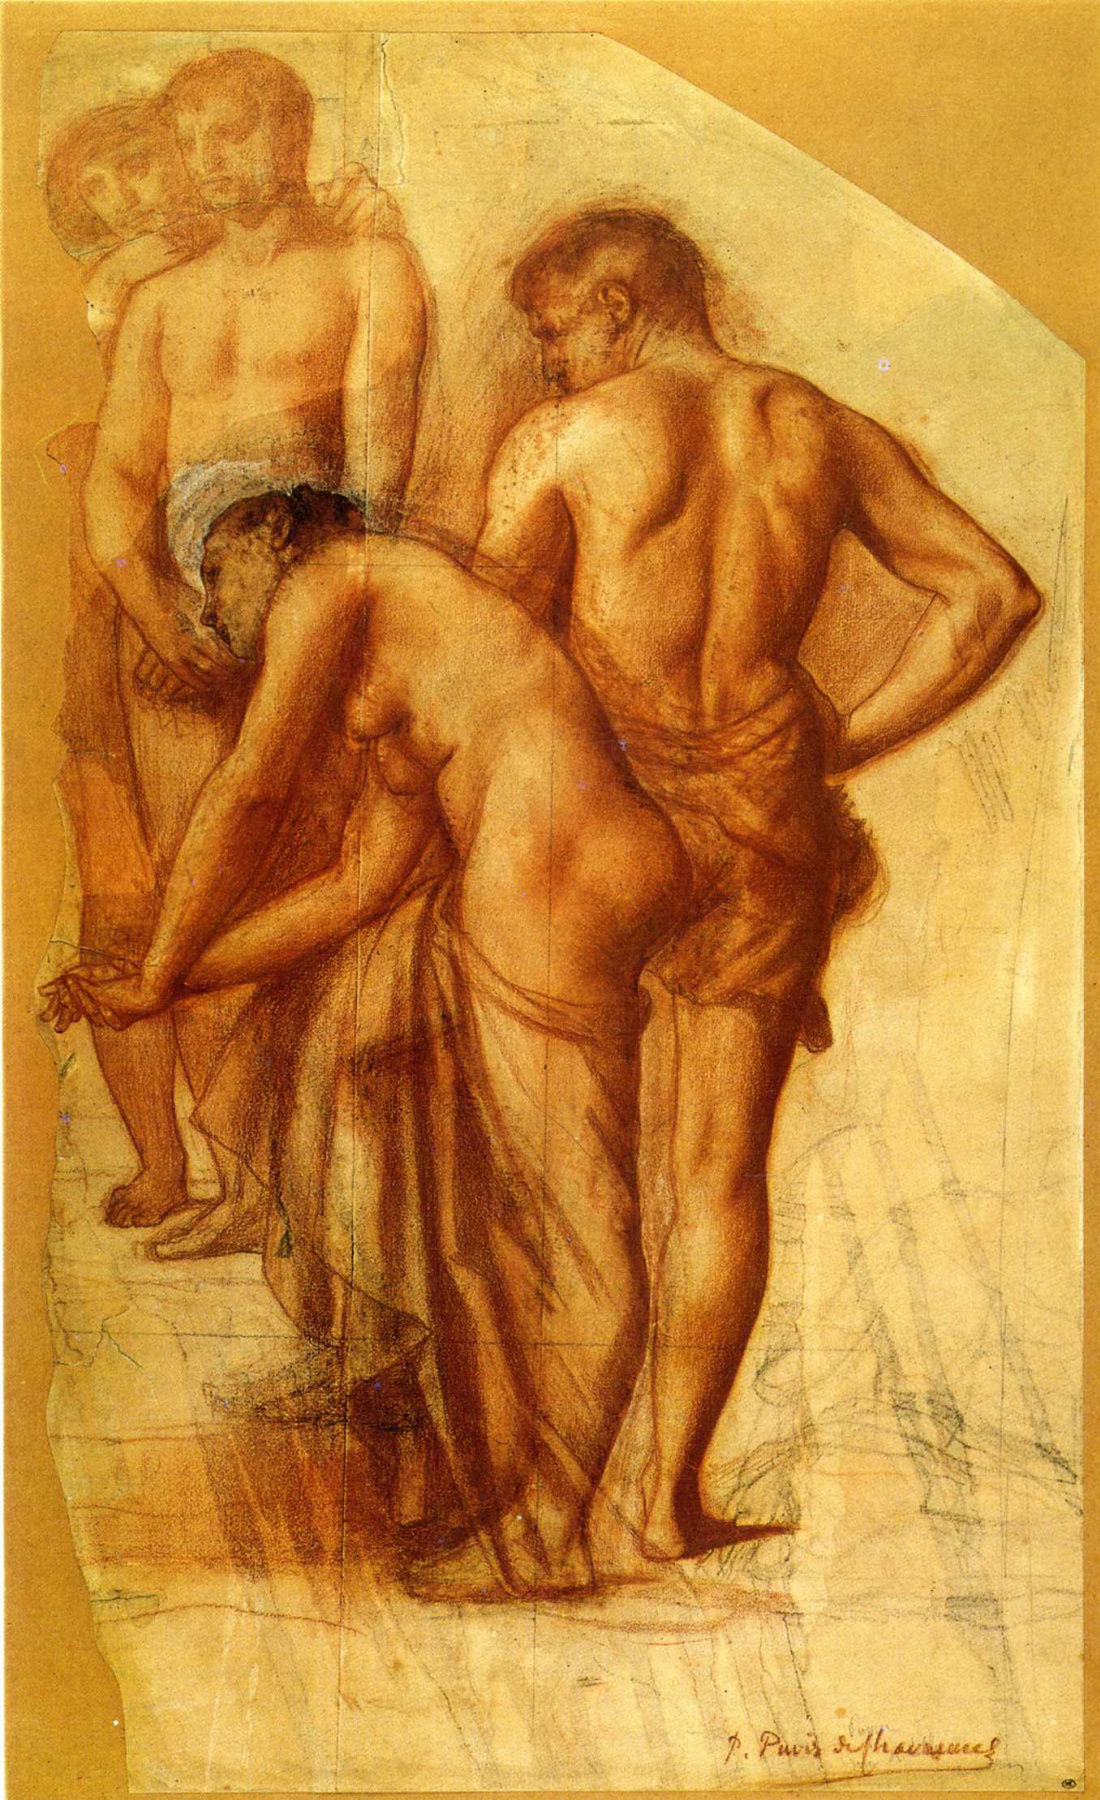 Pierre Cecil Puvi de Chavannes. Nude